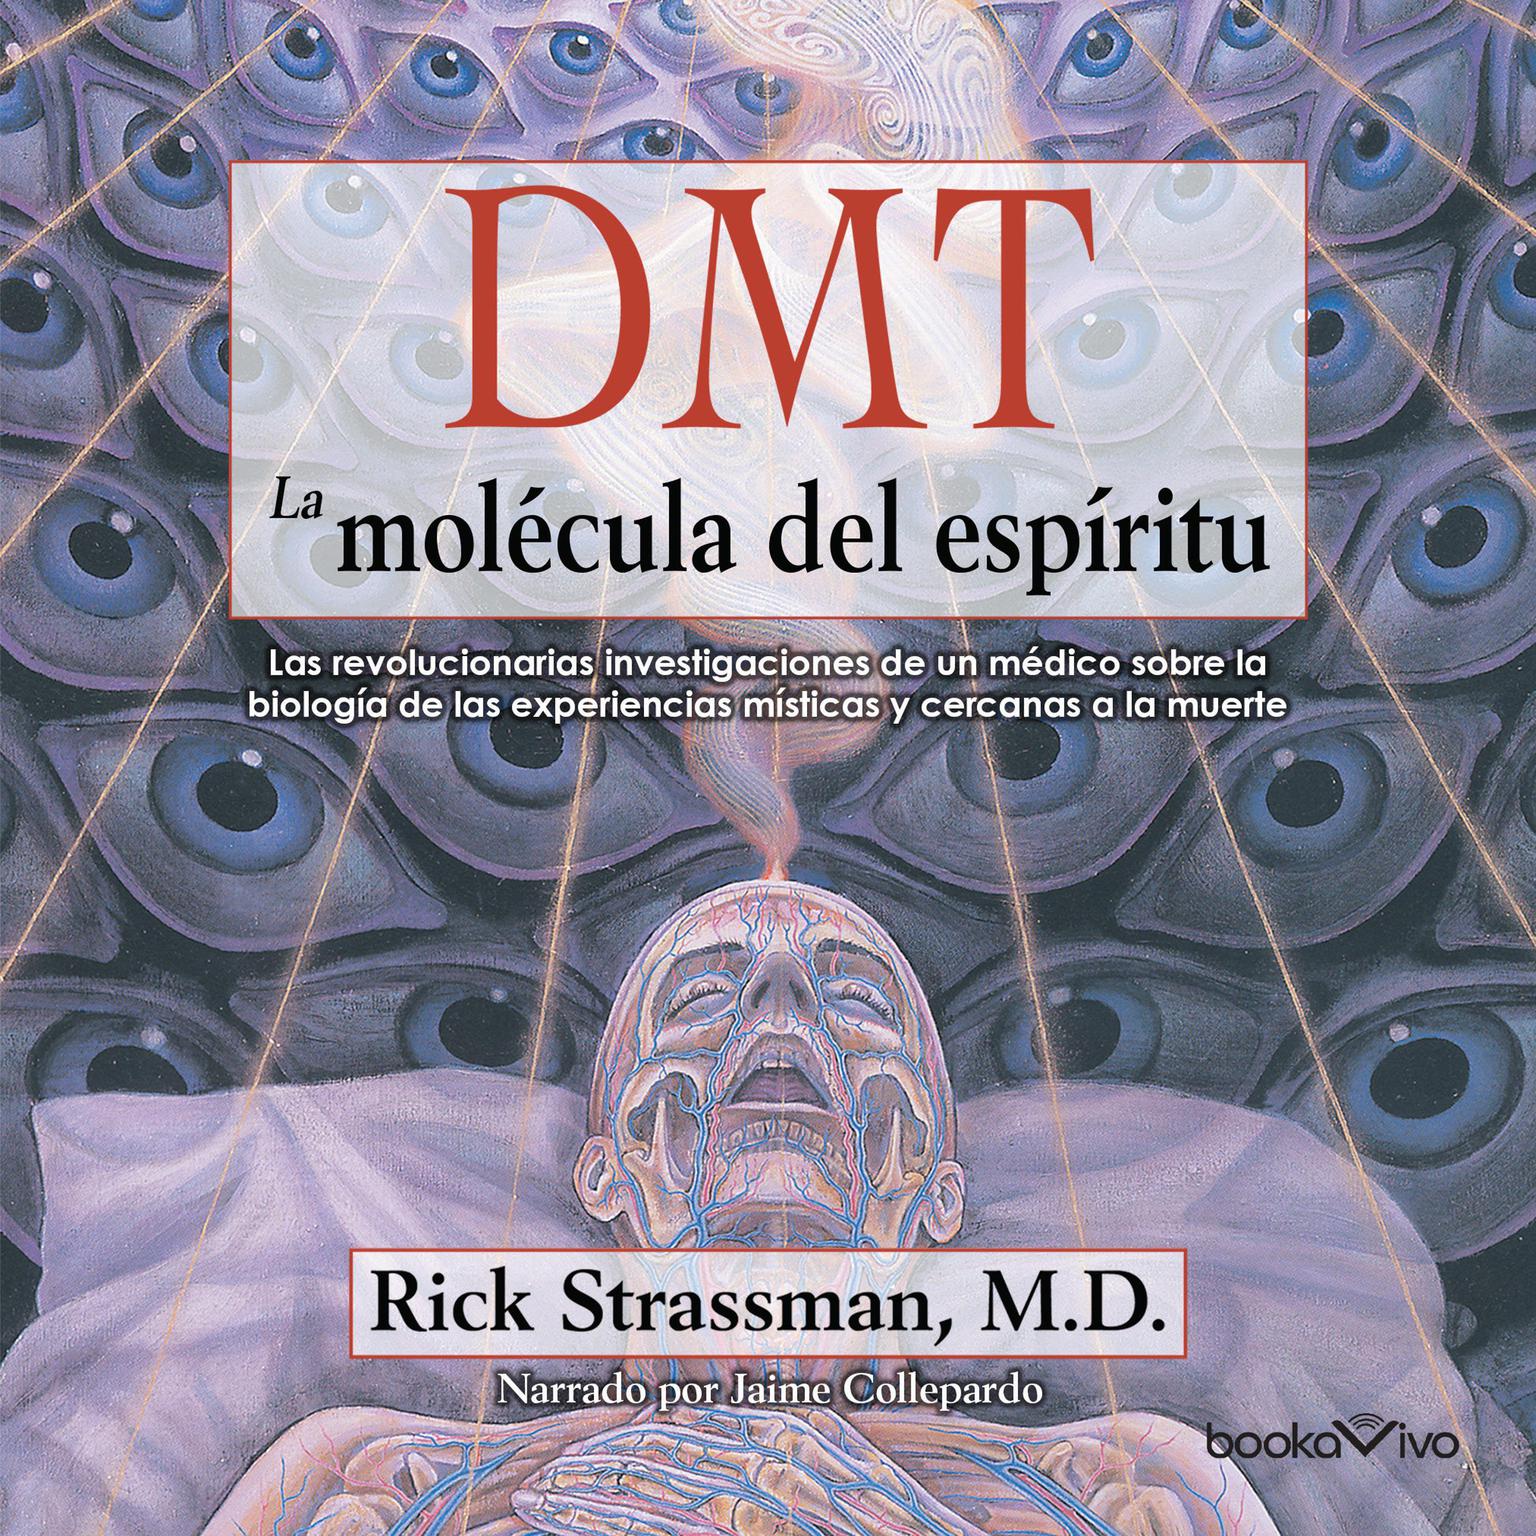 DMT: La molécula del espíritu: Las revolucionarias investigaciones de un medico sobre la biologia de las experiencias misticas y cercanas a la muerte Audiobook, by Rick Strassman